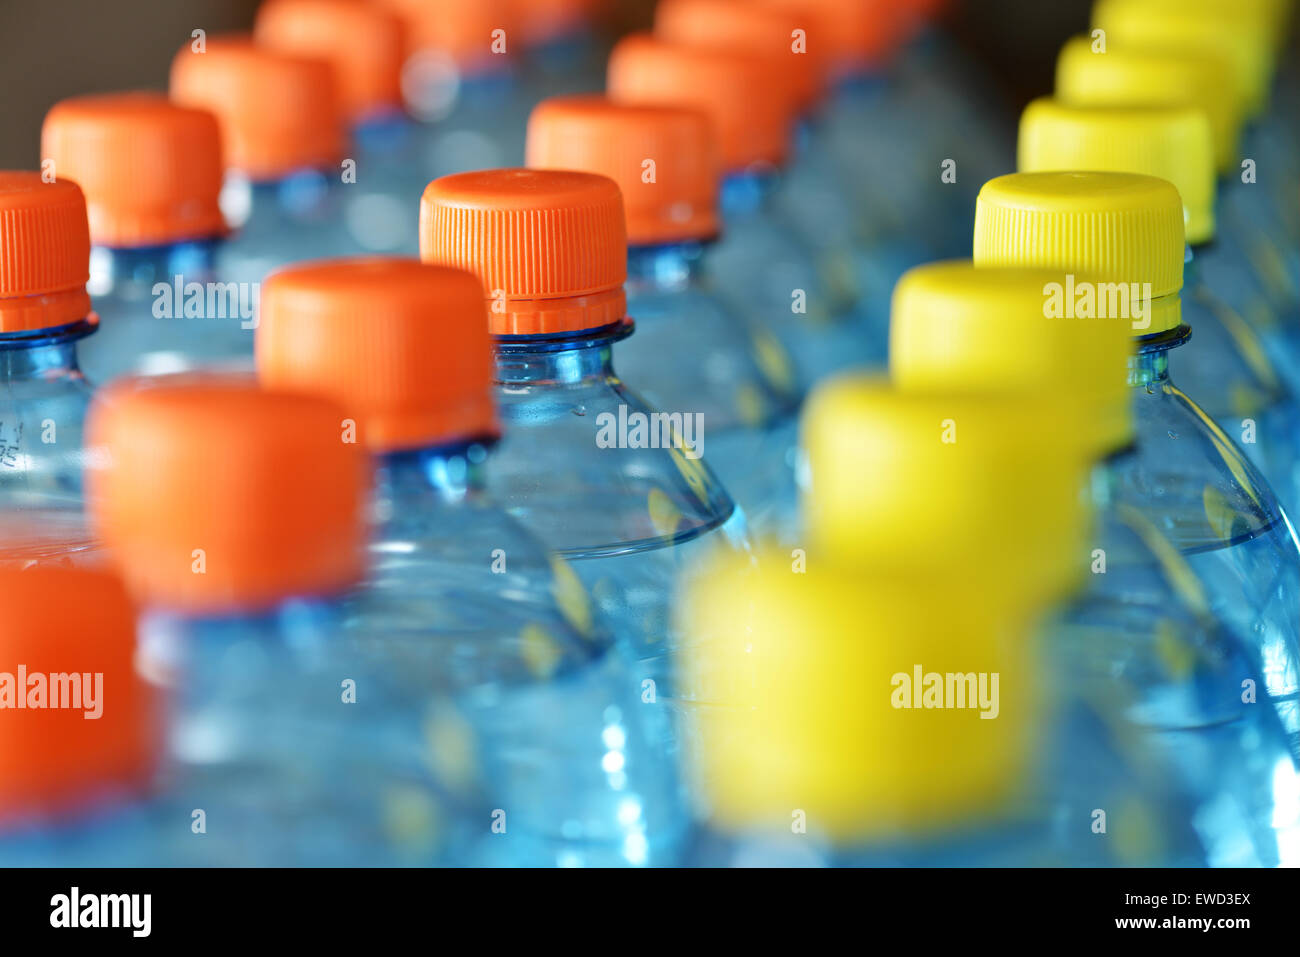 Plastic bottles Stock Photo